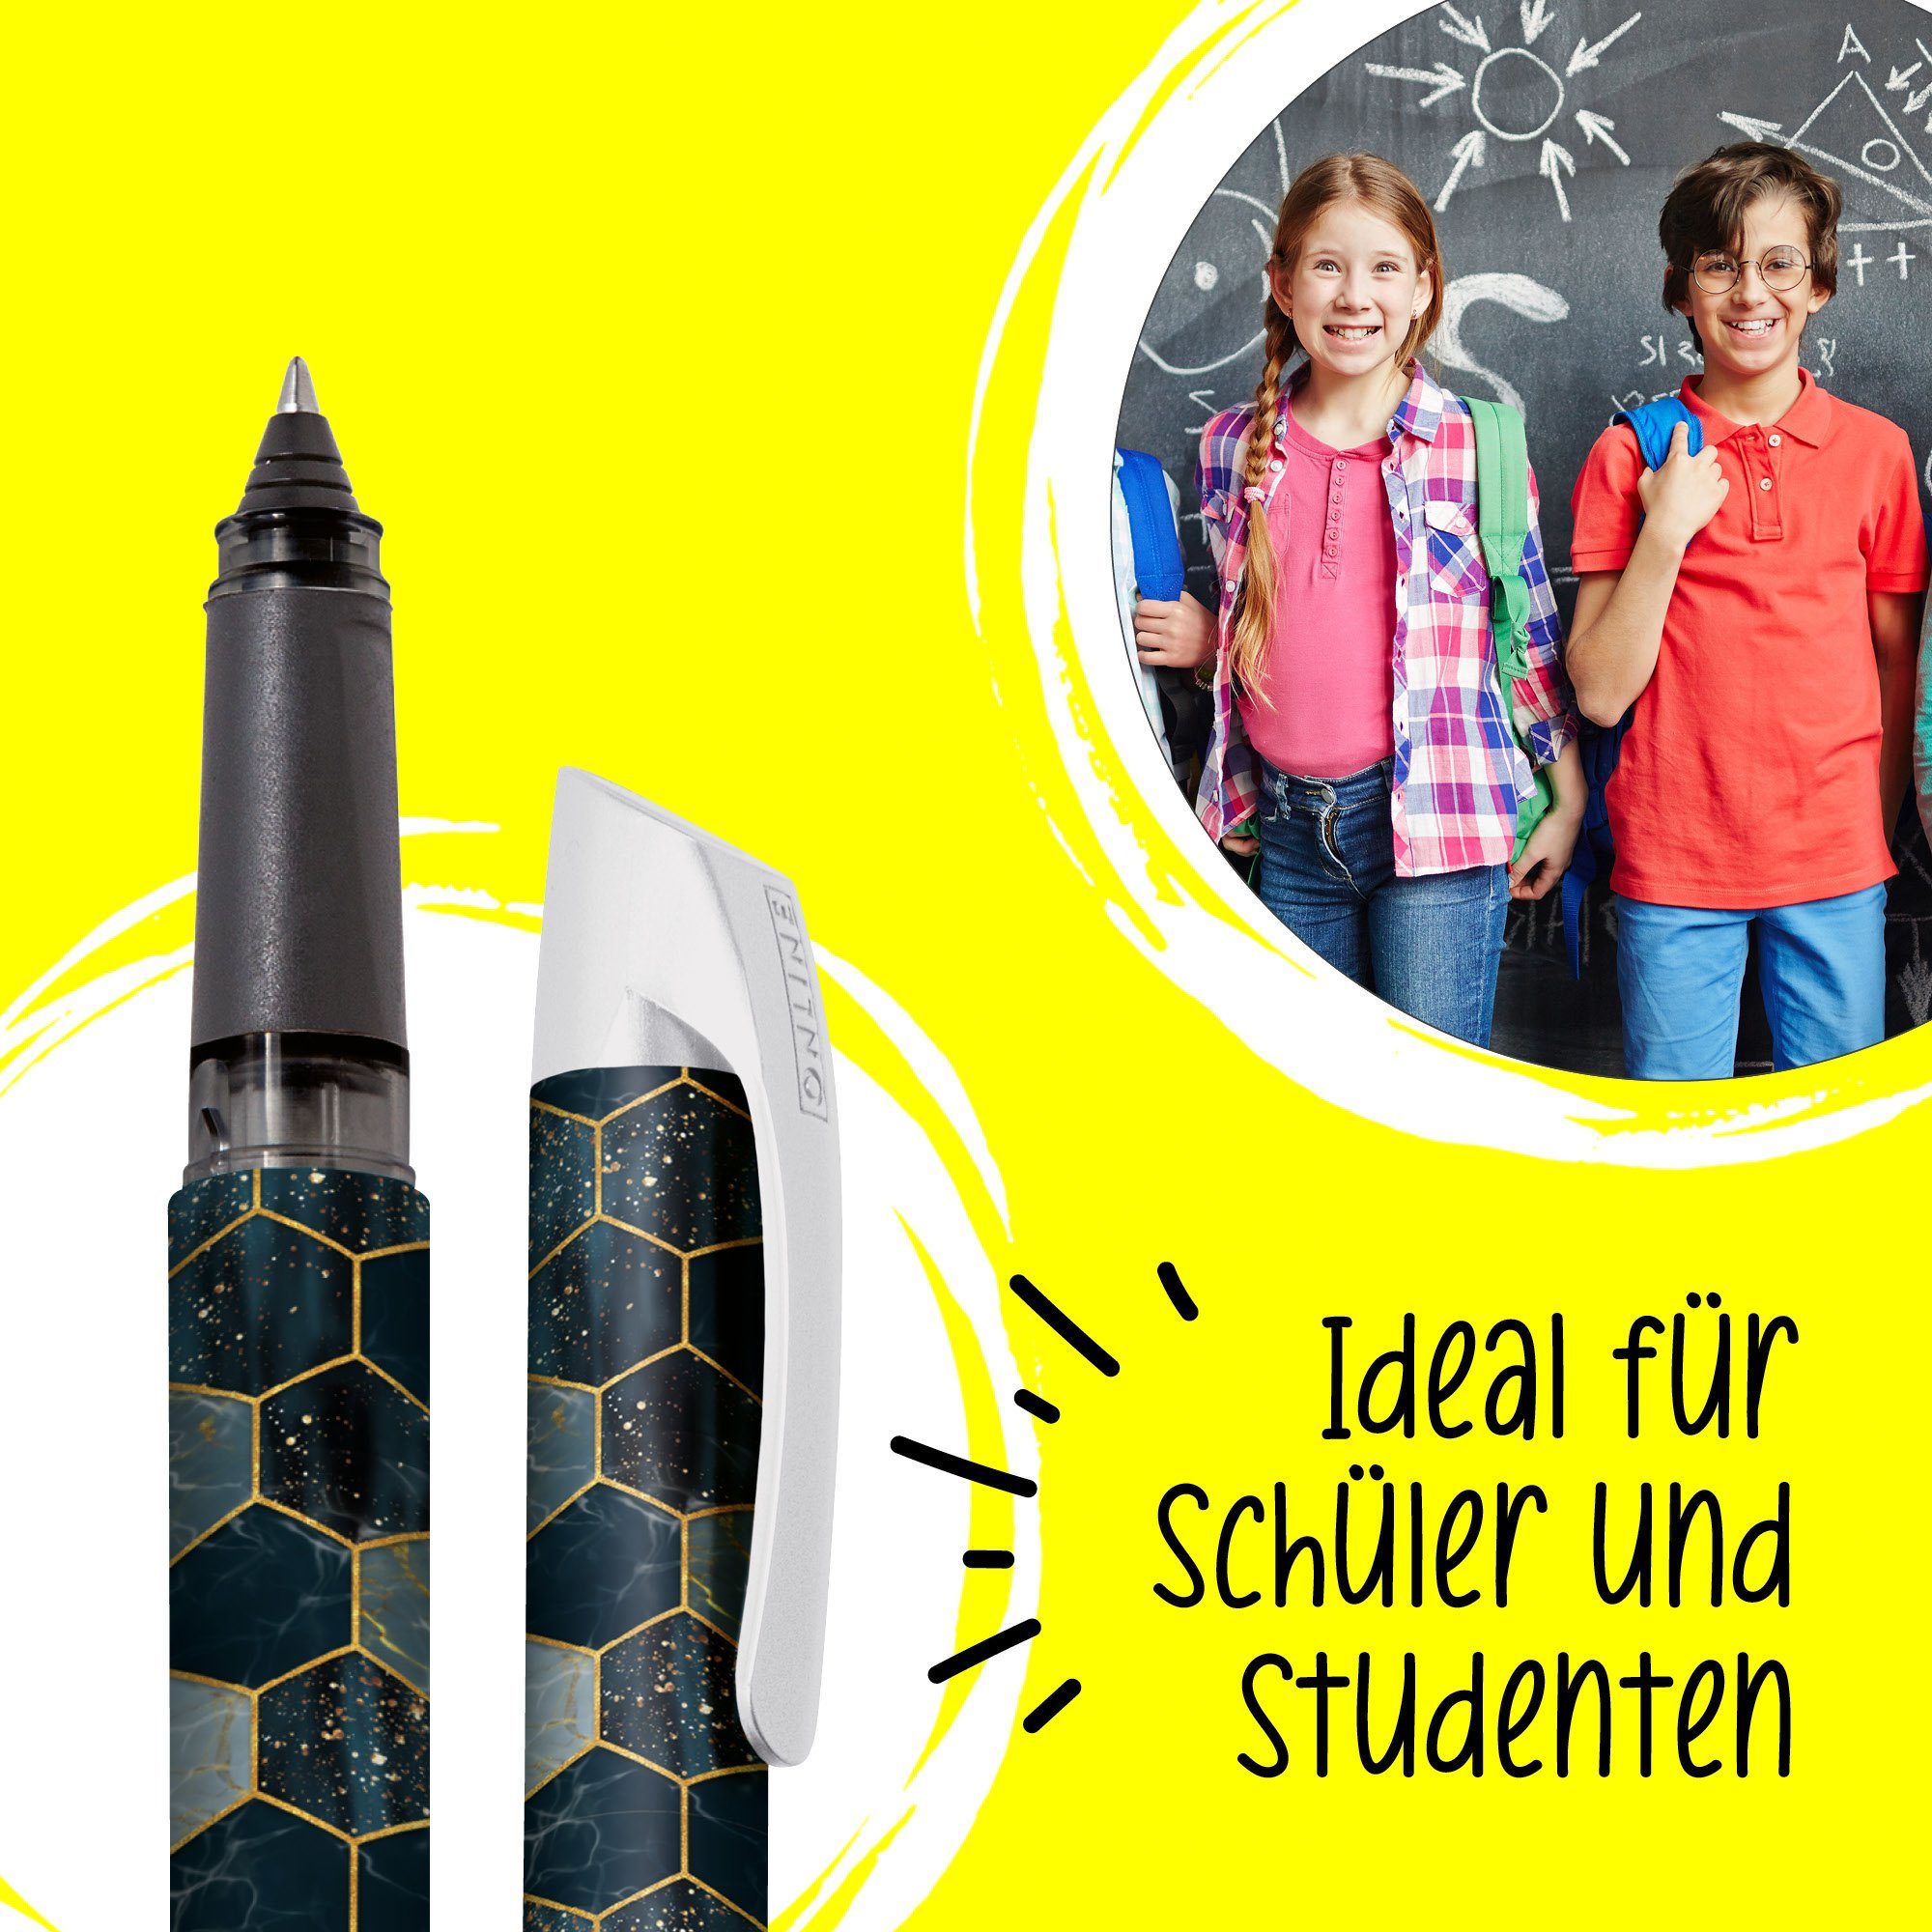 Campus Schule, ideal in hergestellt für die ergonomisch, Deutschland Tintenroller Tintenpatronen-Rollerball, Hexagon Online Pen